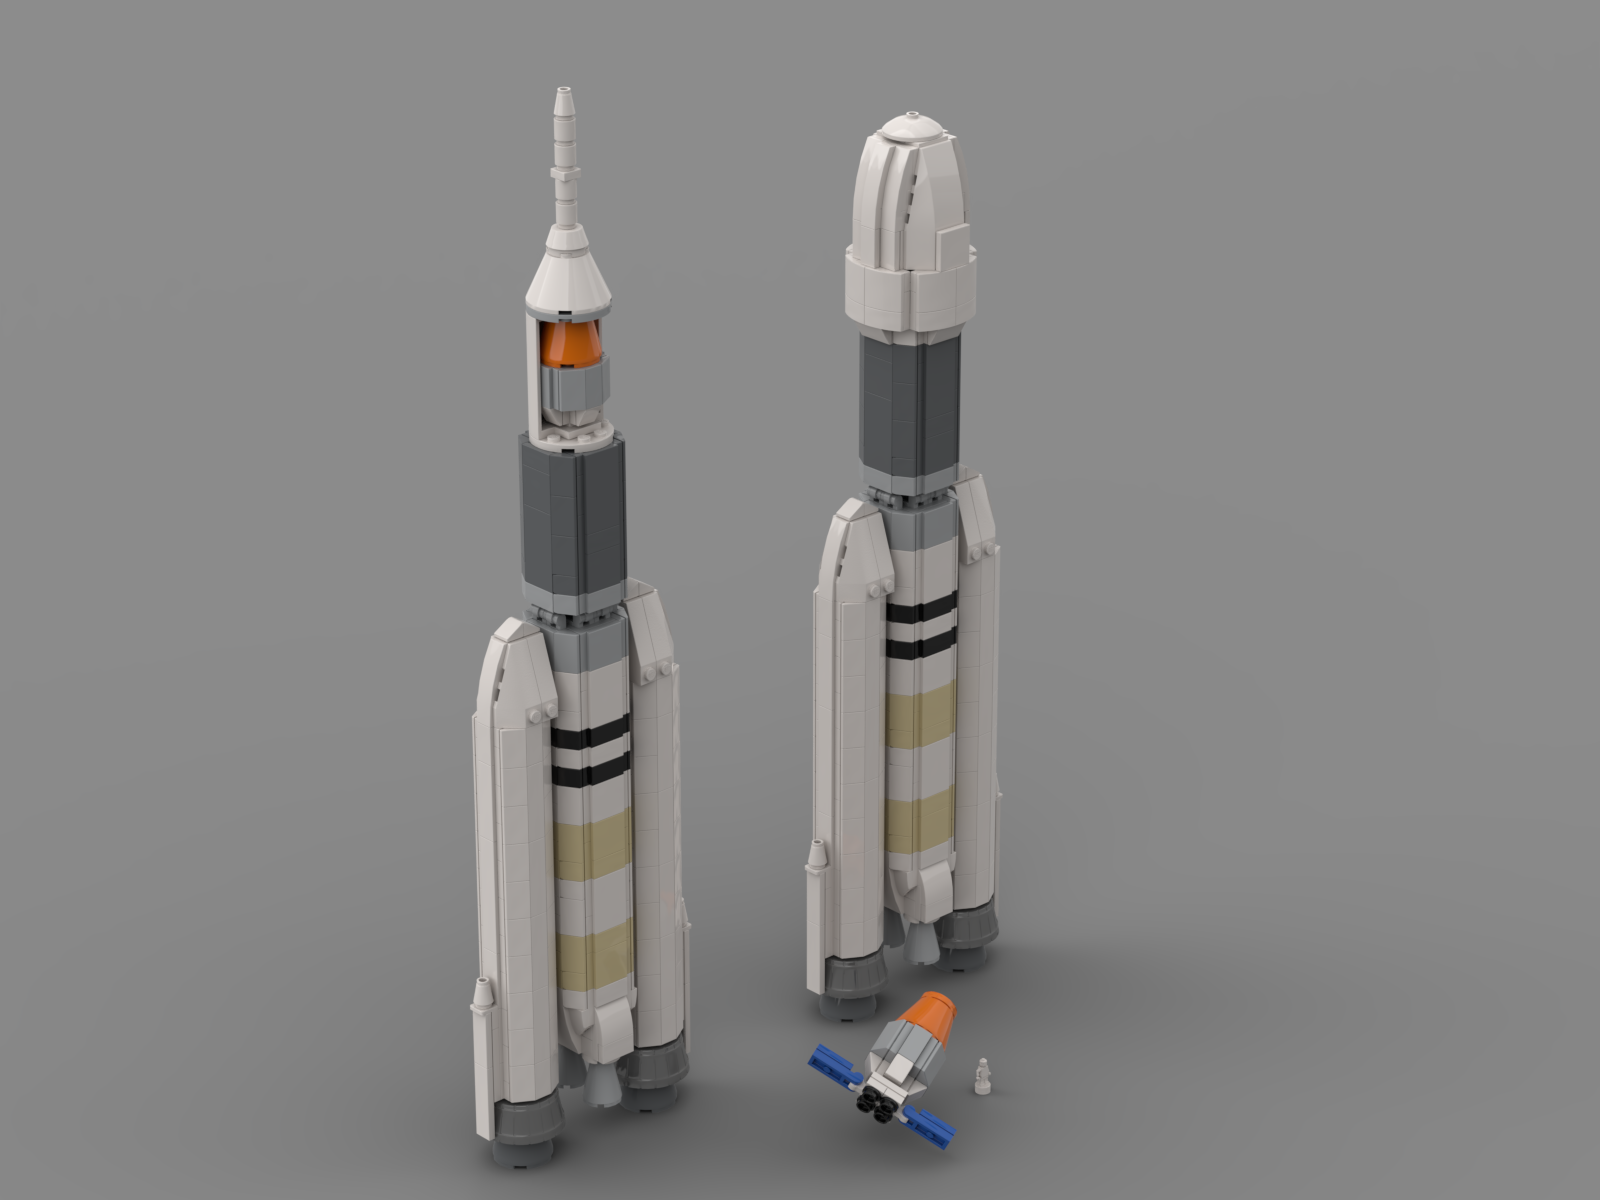 GSLV Mk III and Gaganyaan Orbital Module in Lego!